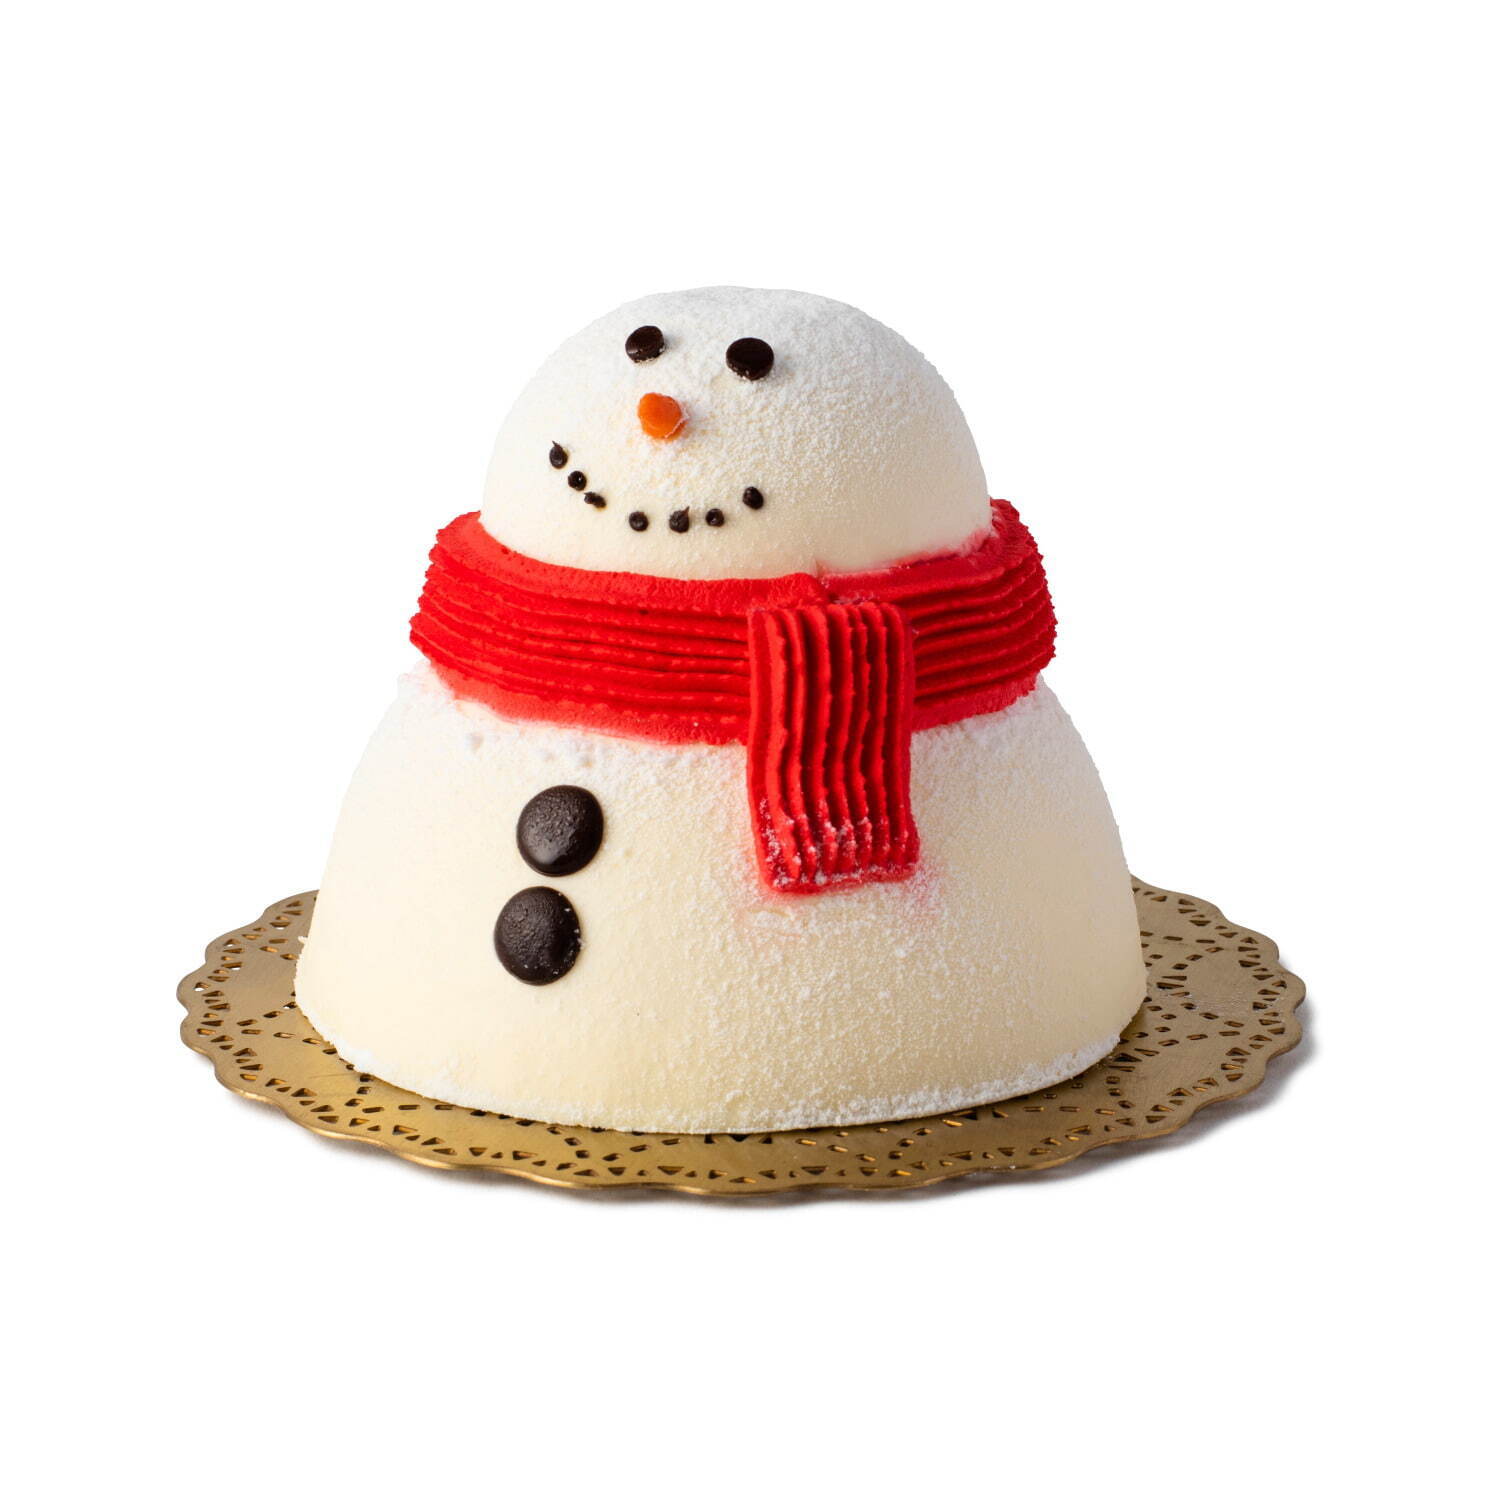 ルミネ＆ニュウマンのクリスマスケーキ2021年、雪だるま型ケーキやエシレバター使用タルトなど｜写真11